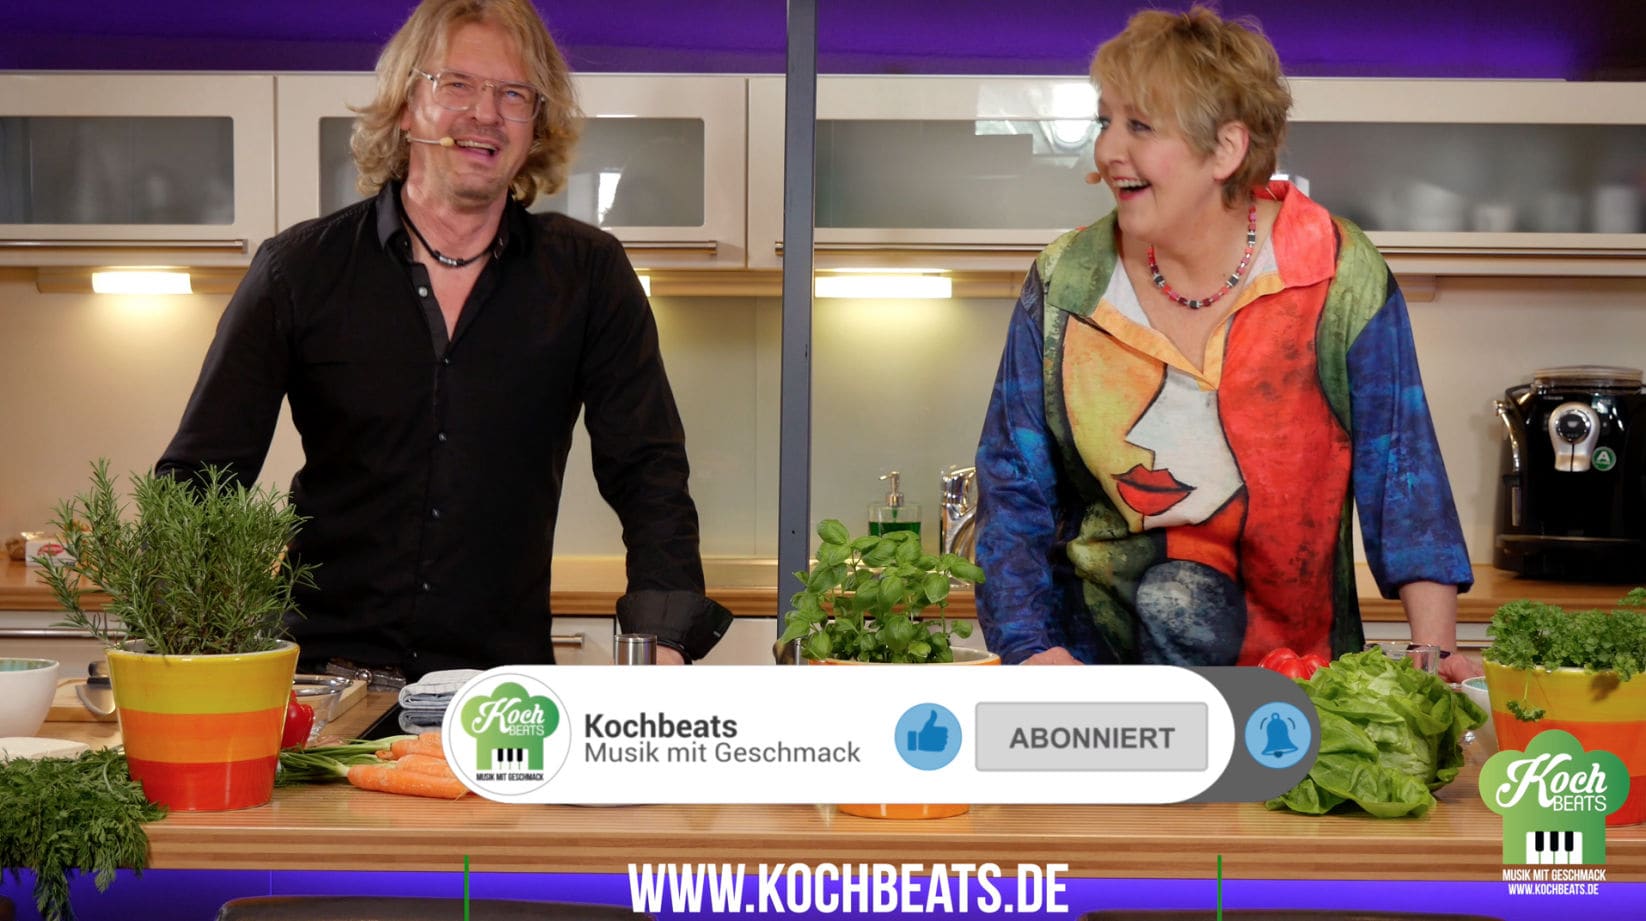 Kochbeats-Uwe-Thielker-youtube-Vorschau-bild-mit-franziska-mense-moritz-musik-mit-geschmack-dortmund-entertainment